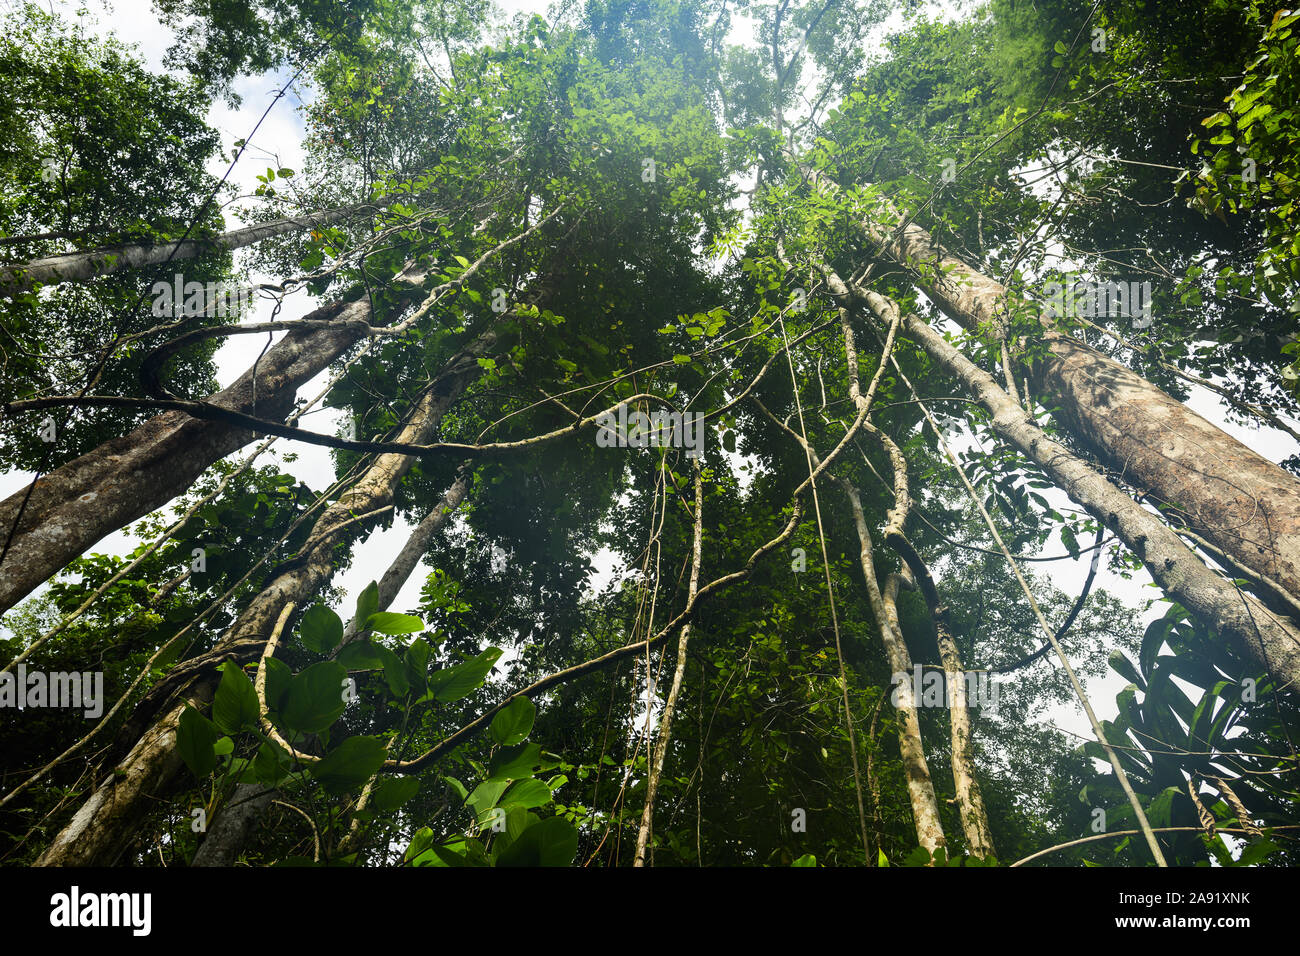 (Selektive Fokus) atemberaubenden Blick auf einige tropische Bäume mit schönen grünen Kronen in den tropischen Regenwald des Taman Negara National Park. Stockfoto